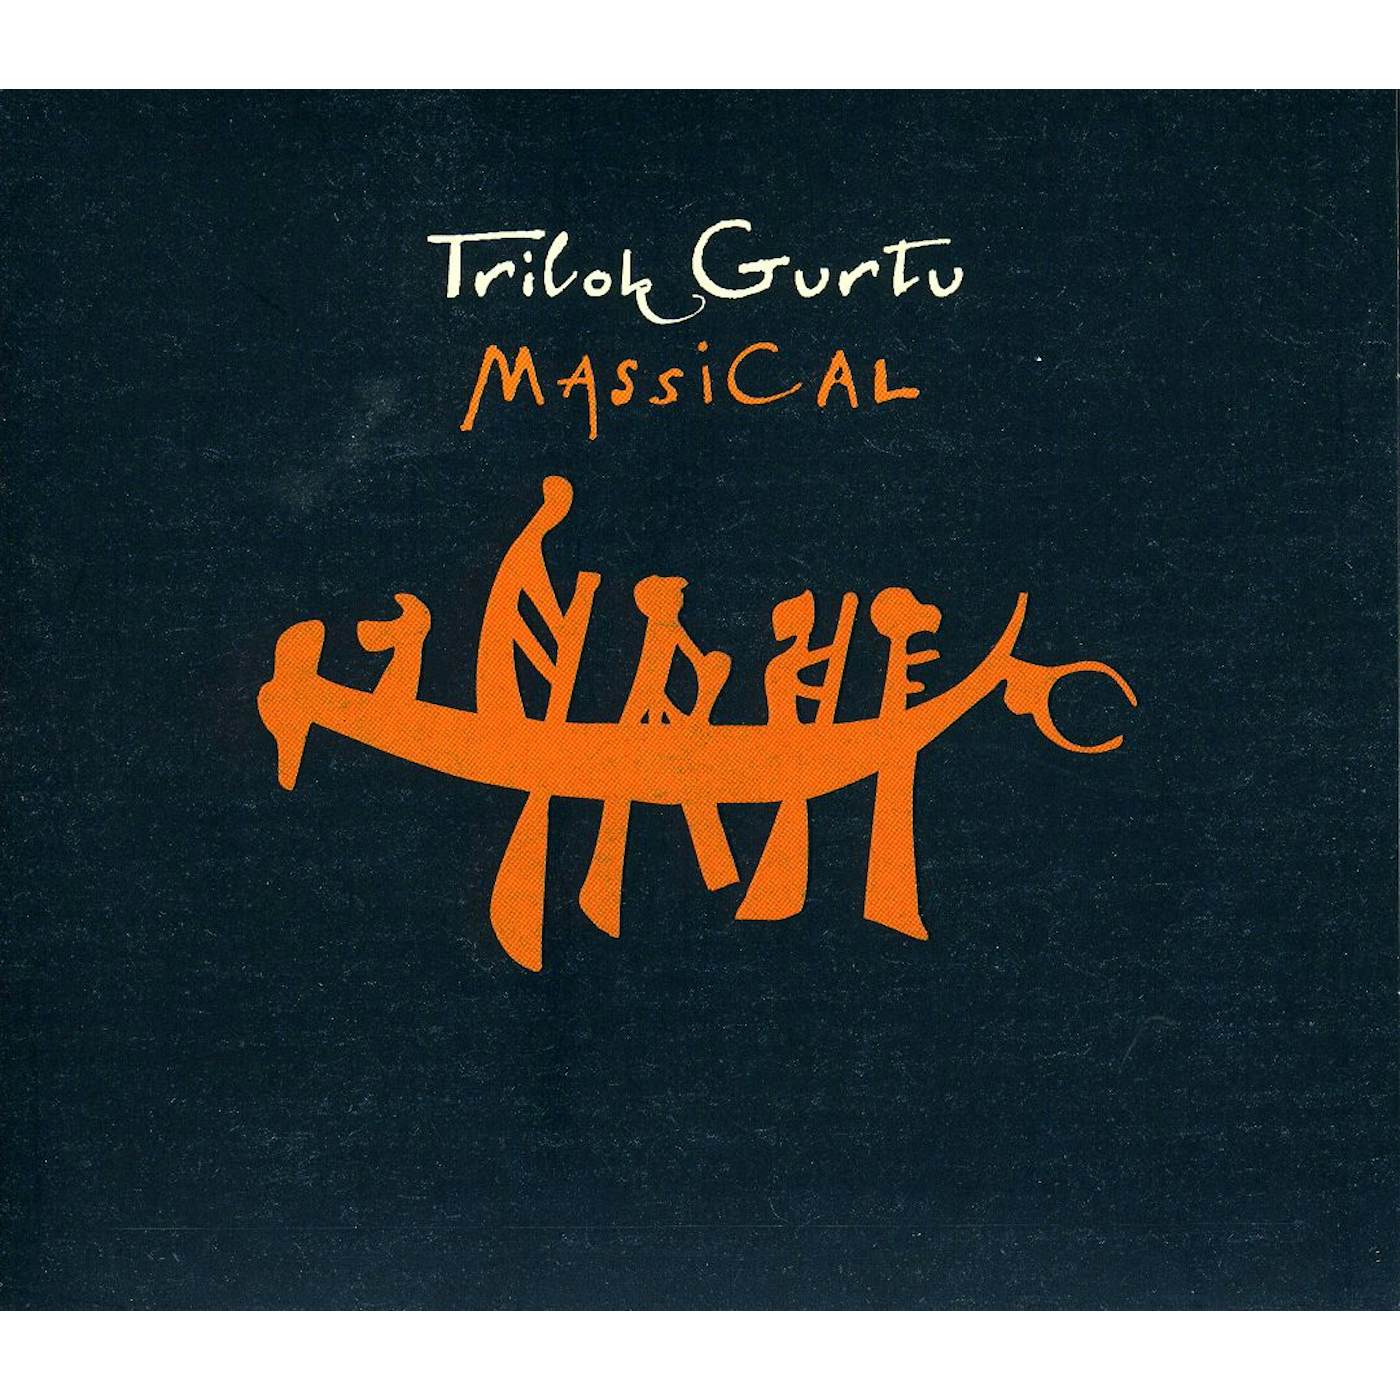 Trilok Gurtu MASSICAL CD